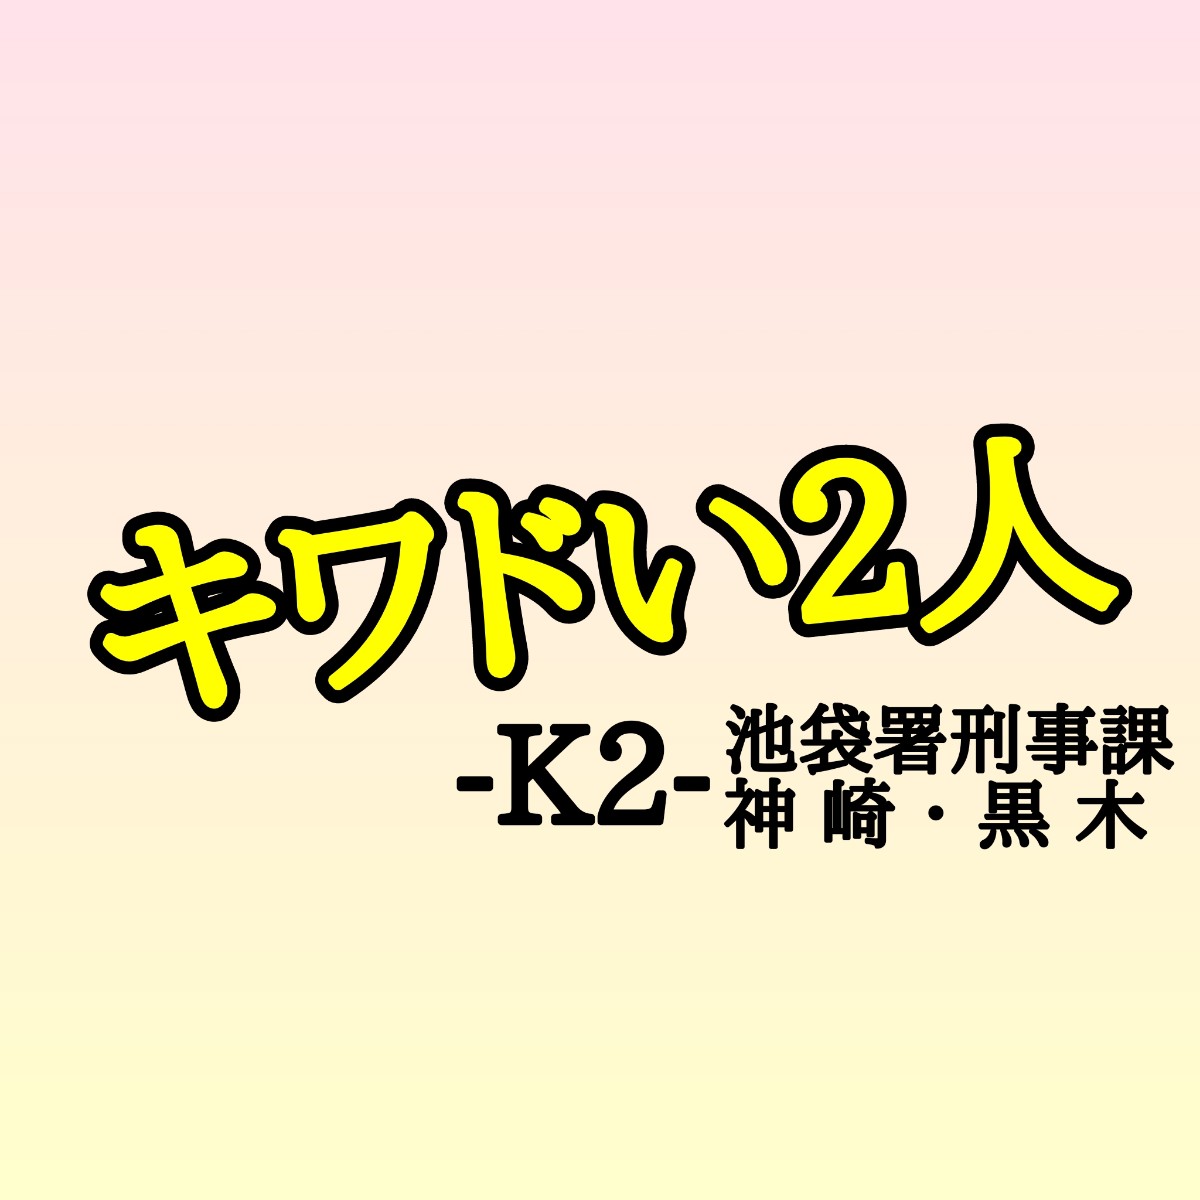 キワドい2人k2相関図キャストや原作まとめ キワドい秘密とは Sakusaku